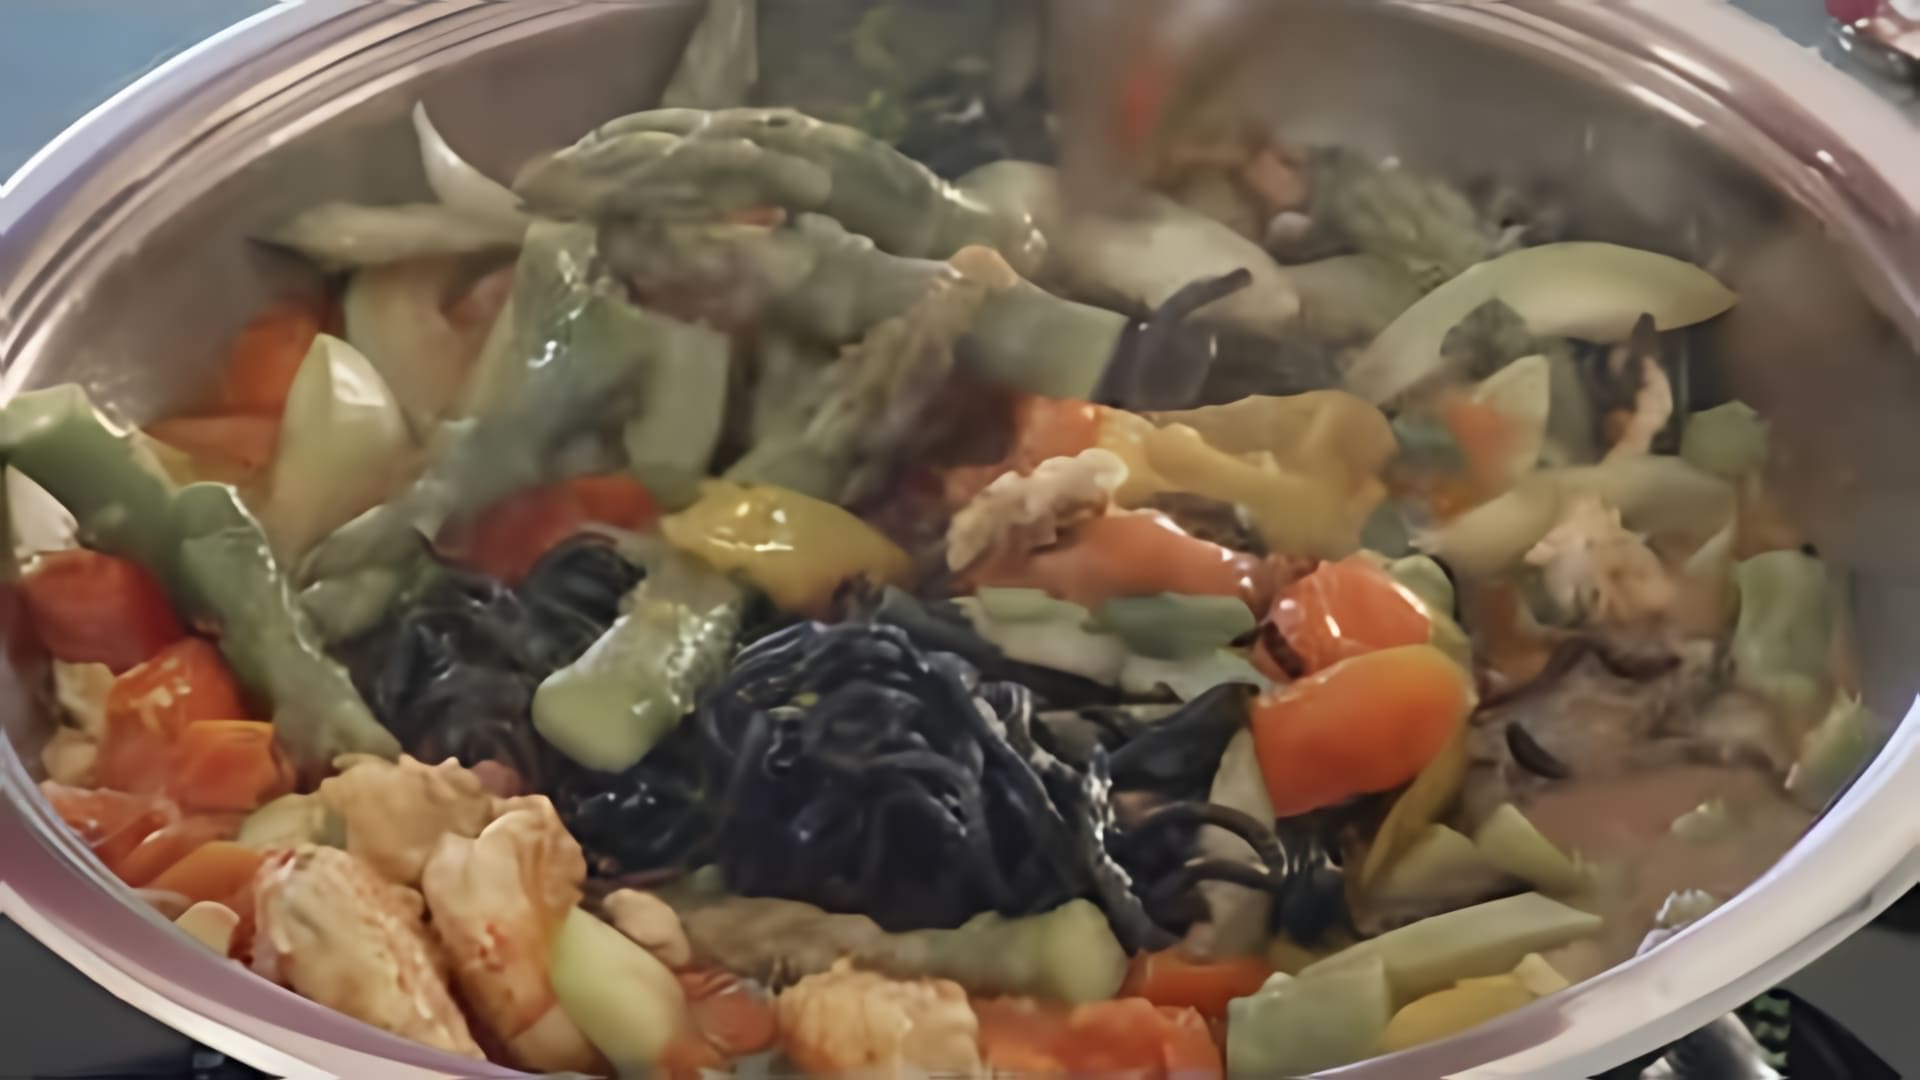 В этом видео-ролике мы увидим процесс приготовления вкусного итальянского блюда - черной пасты лингвини с креветками